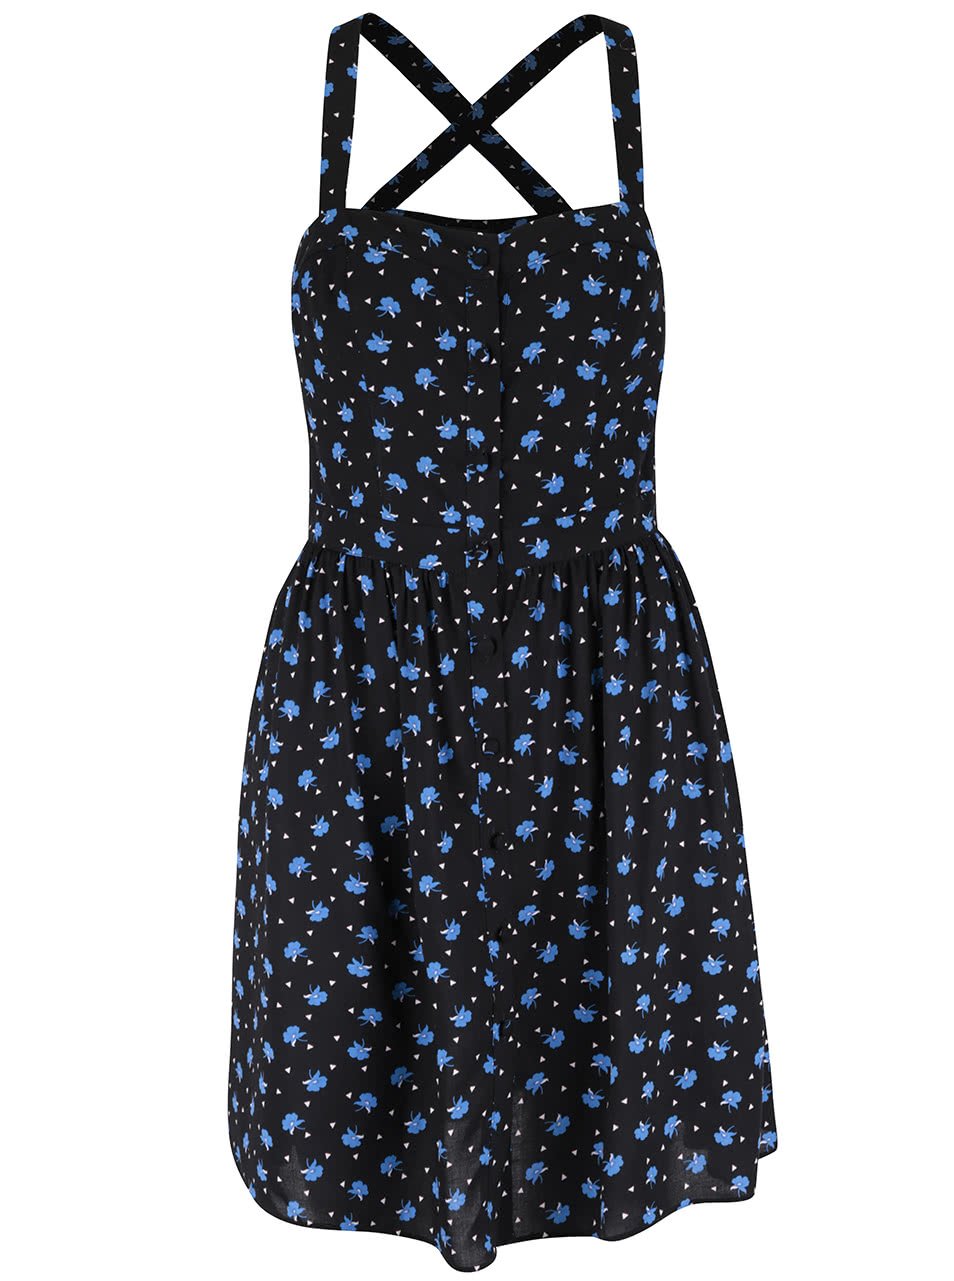 Černé šaty s potiskem modrých květů Miss Selfridge